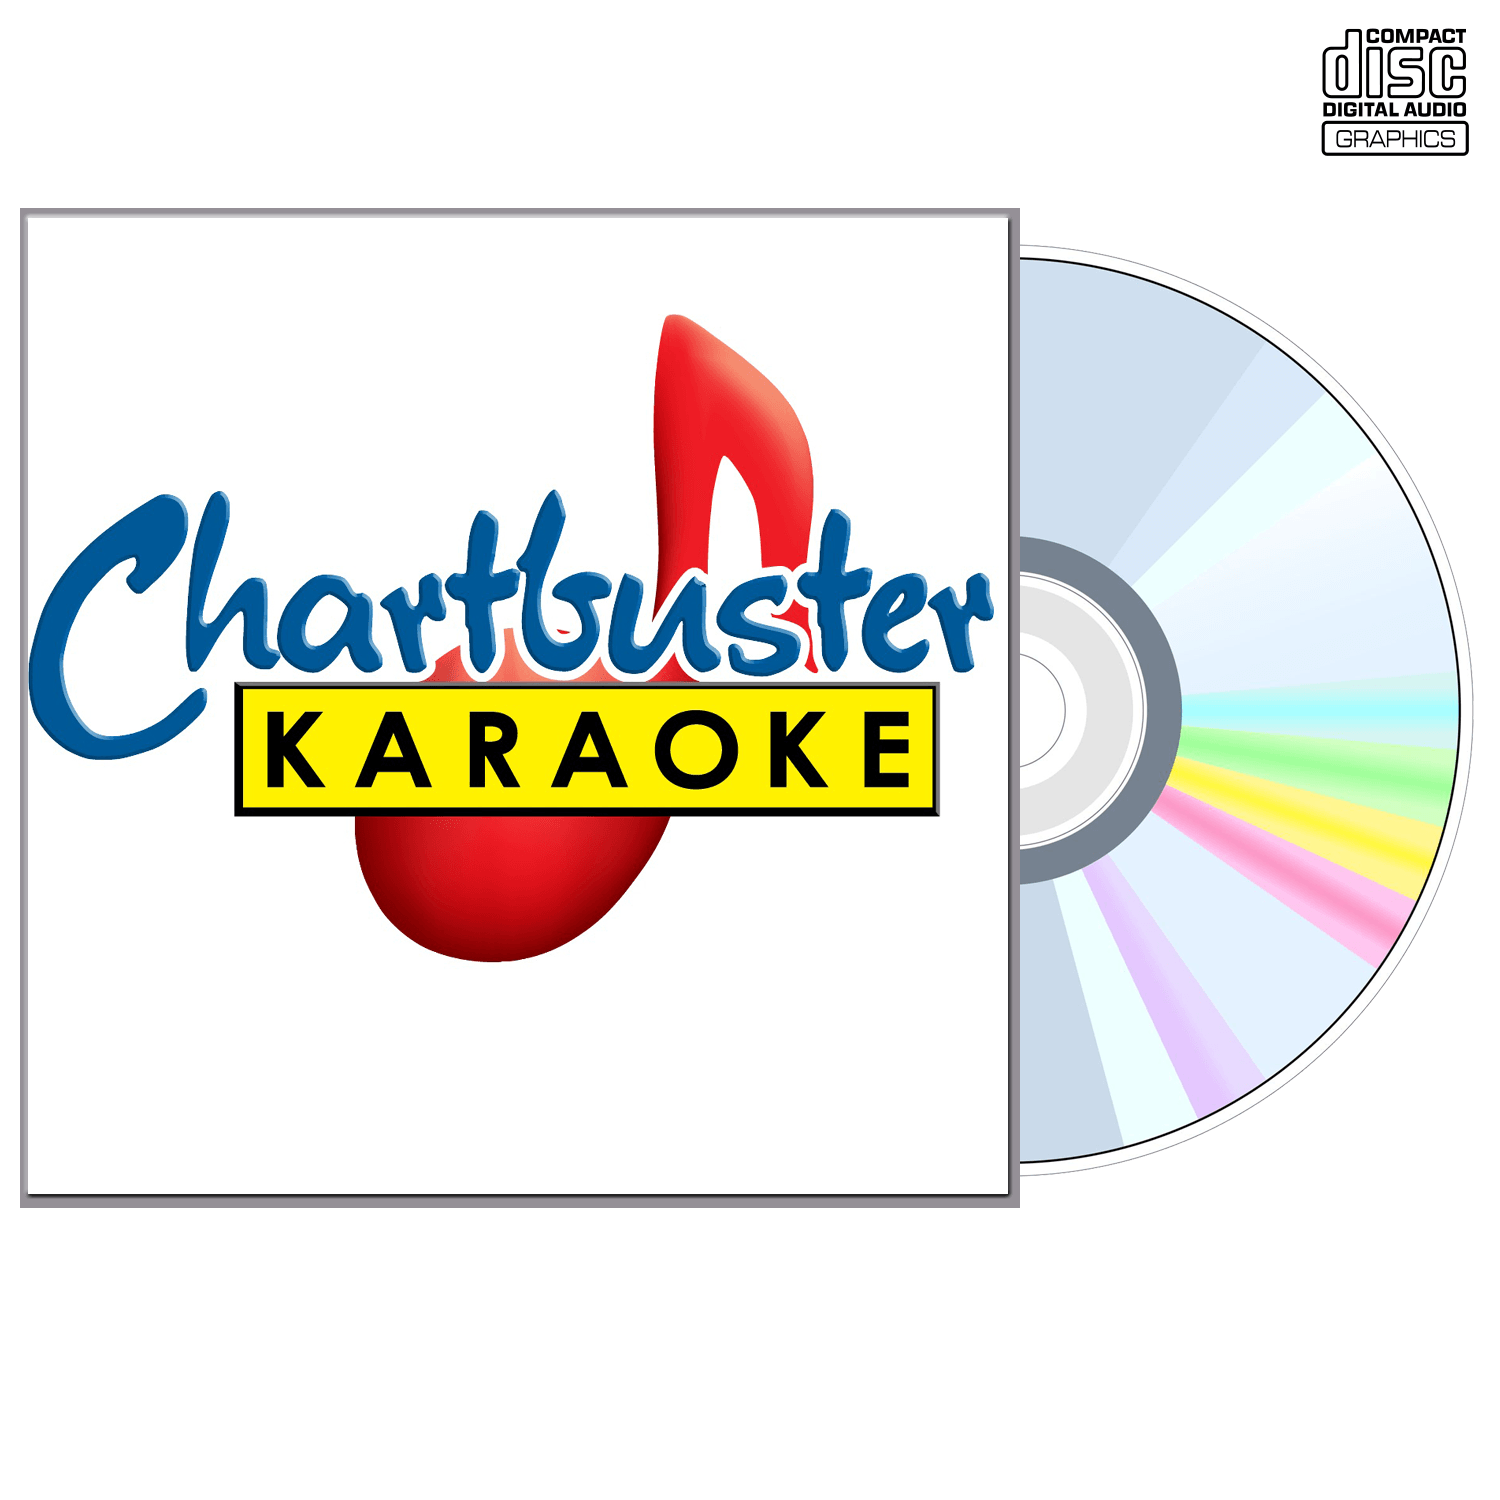 B2k - CD+G - Chartbuster Karaoke - Karaoke Home Entertainment